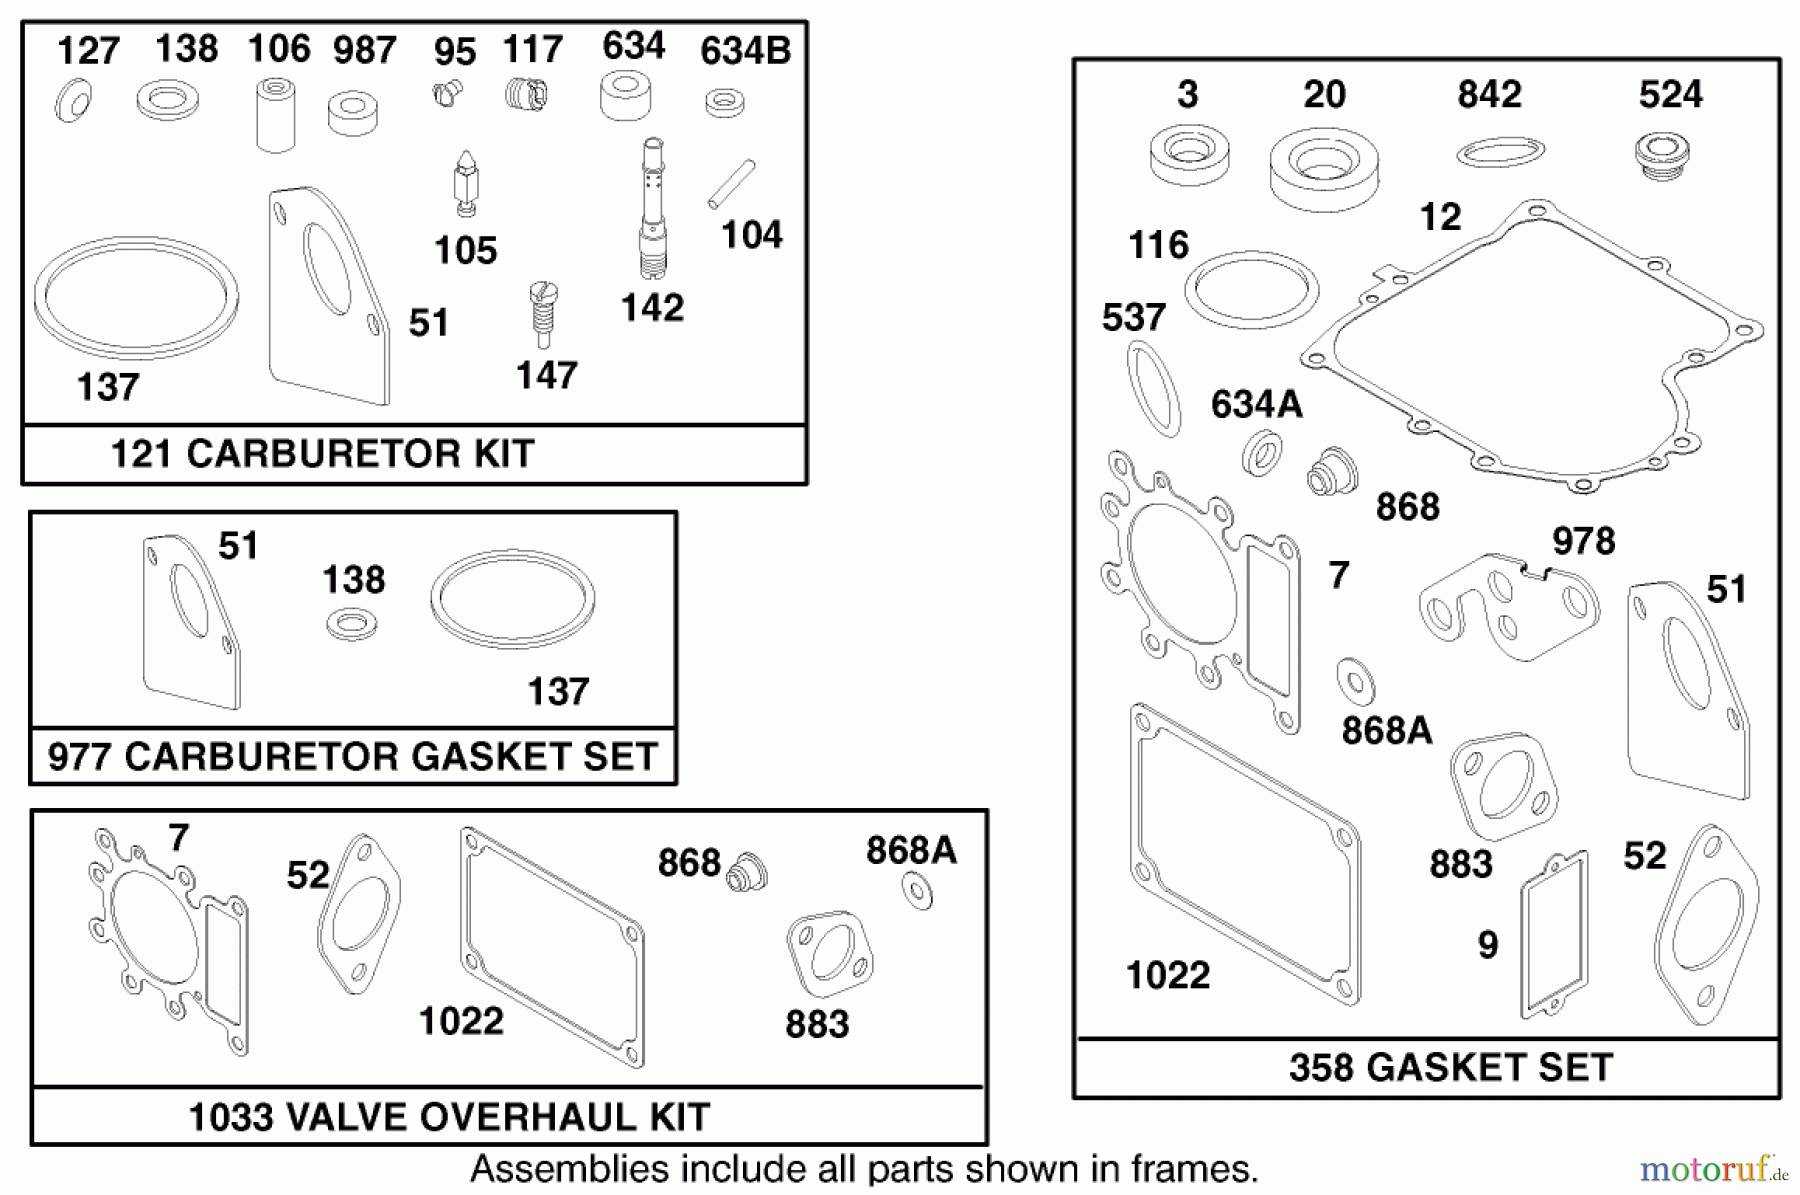  Toro Neu Mowers, Lawn & Garden Tractor Seite 1 71218 (16-44HXL) - Toro 16-44HXL Lawn Tractor, 1997 (7900001-7999999) ENGINE BRIGGS & STRATTON MODEL 28Q777-0668-A1 #10